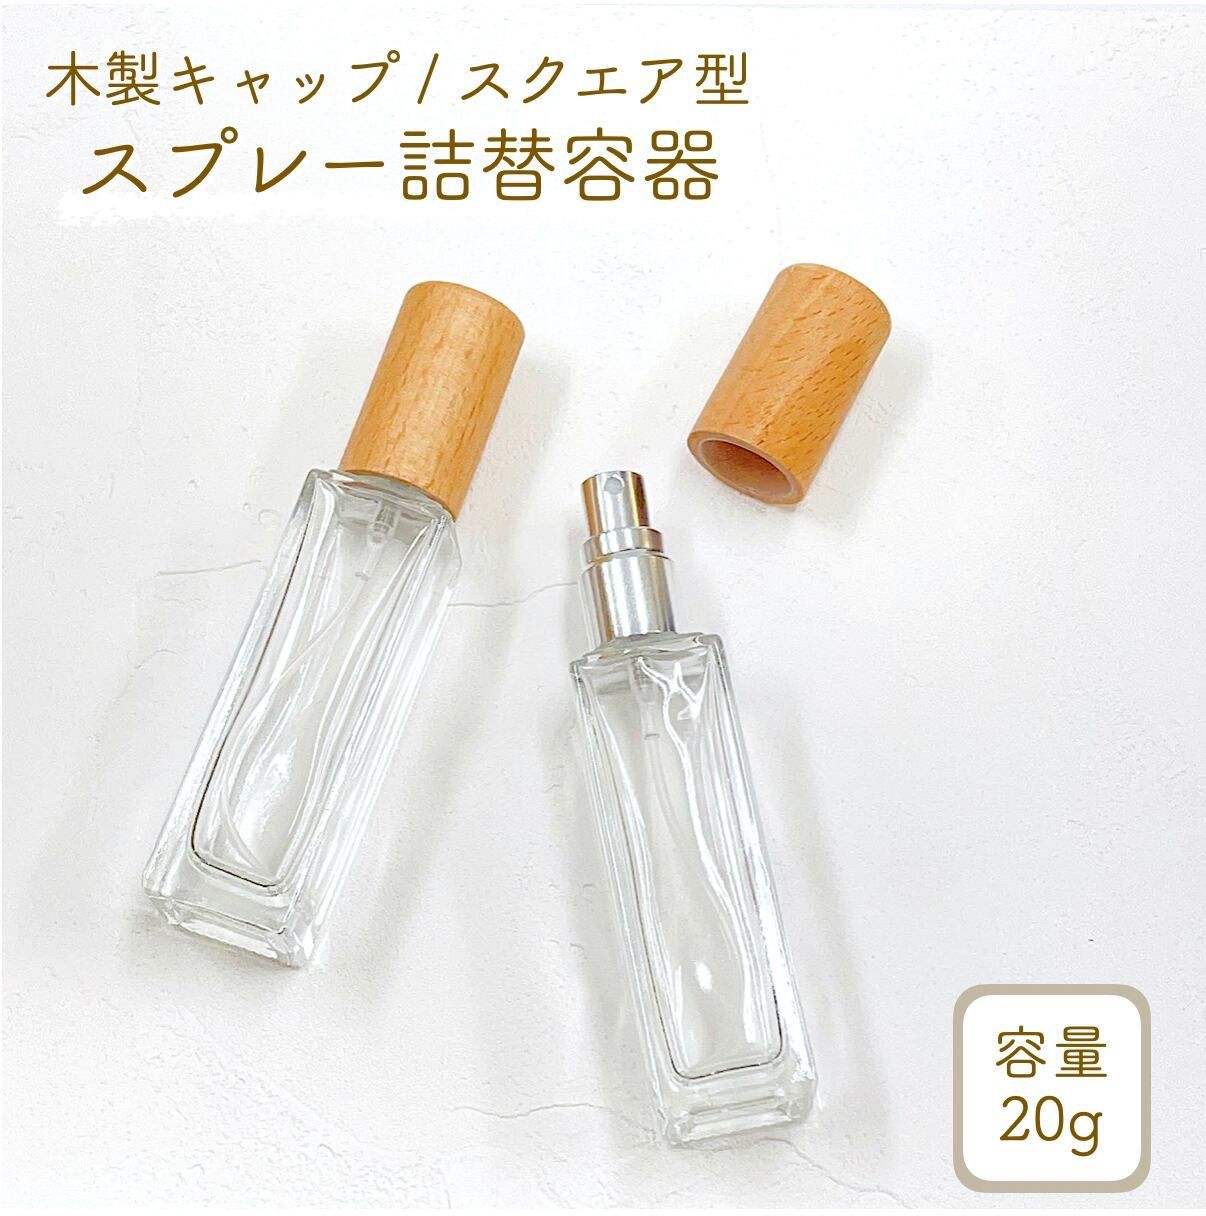 30ml フロスト加工 木目 キャップ ガラス 香水 アロマ 遮光瓶 ボトル 精油 エッセンシャルオイル